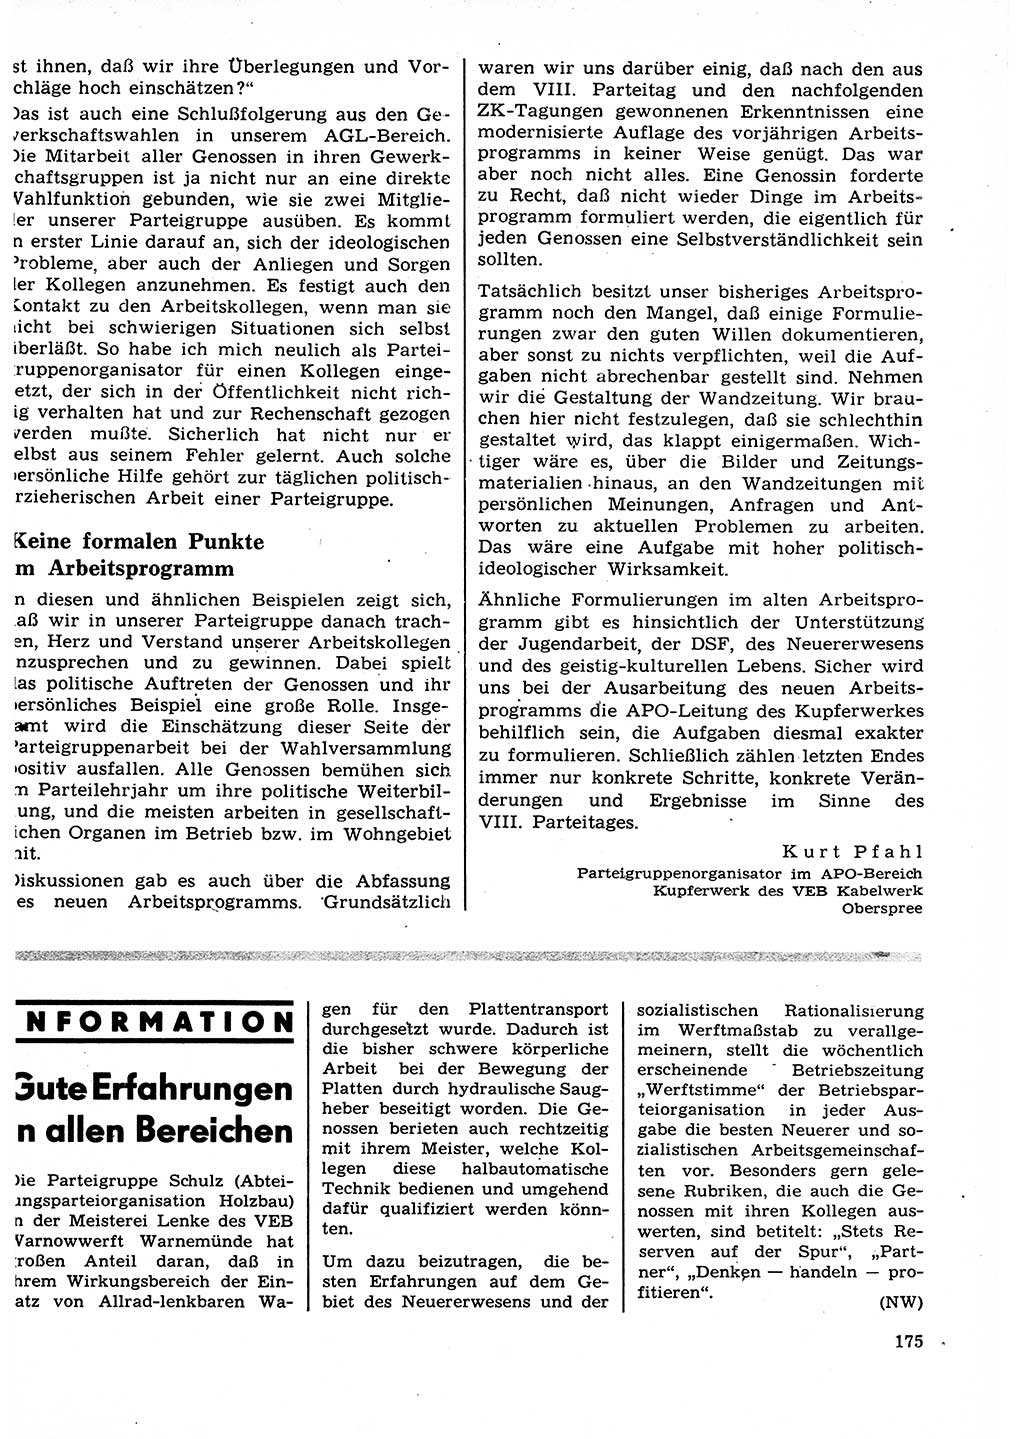 Neuer Weg (NW), Organ des Zentralkomitees (ZK) der SED (Sozialistische Einheitspartei Deutschlands) für Fragen des Parteilebens, 27. Jahrgang [Deutsche Demokratische Republik (DDR)] 1972, Seite 175 (NW ZK SED DDR 1972, S. 175)